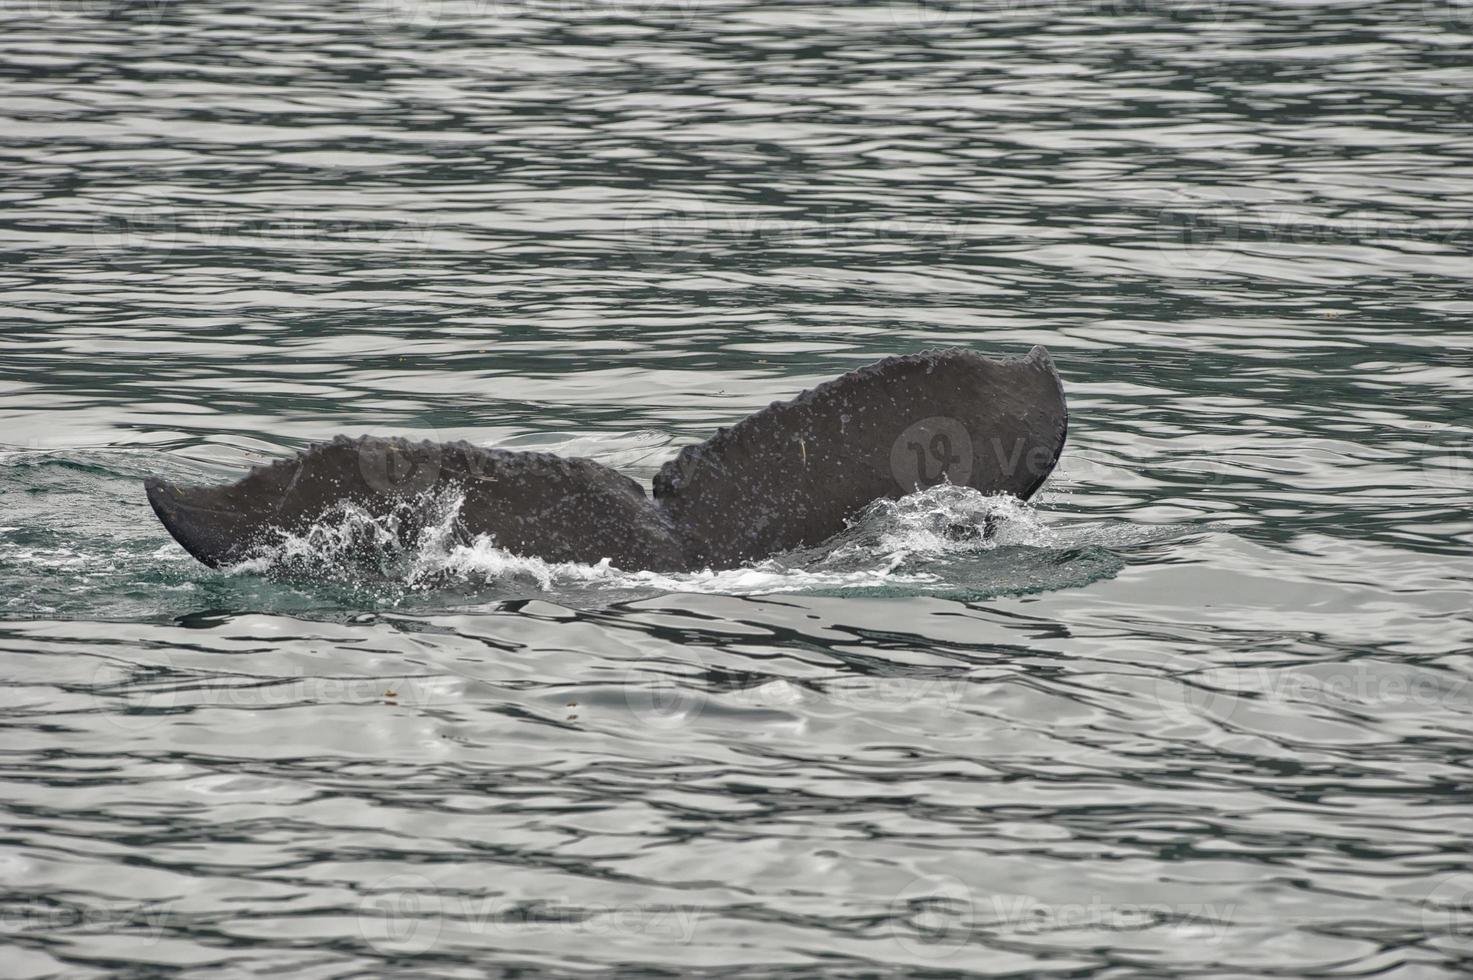 Queue de baleine à bosse en descendant dans la baie du glacier en Alaska photo